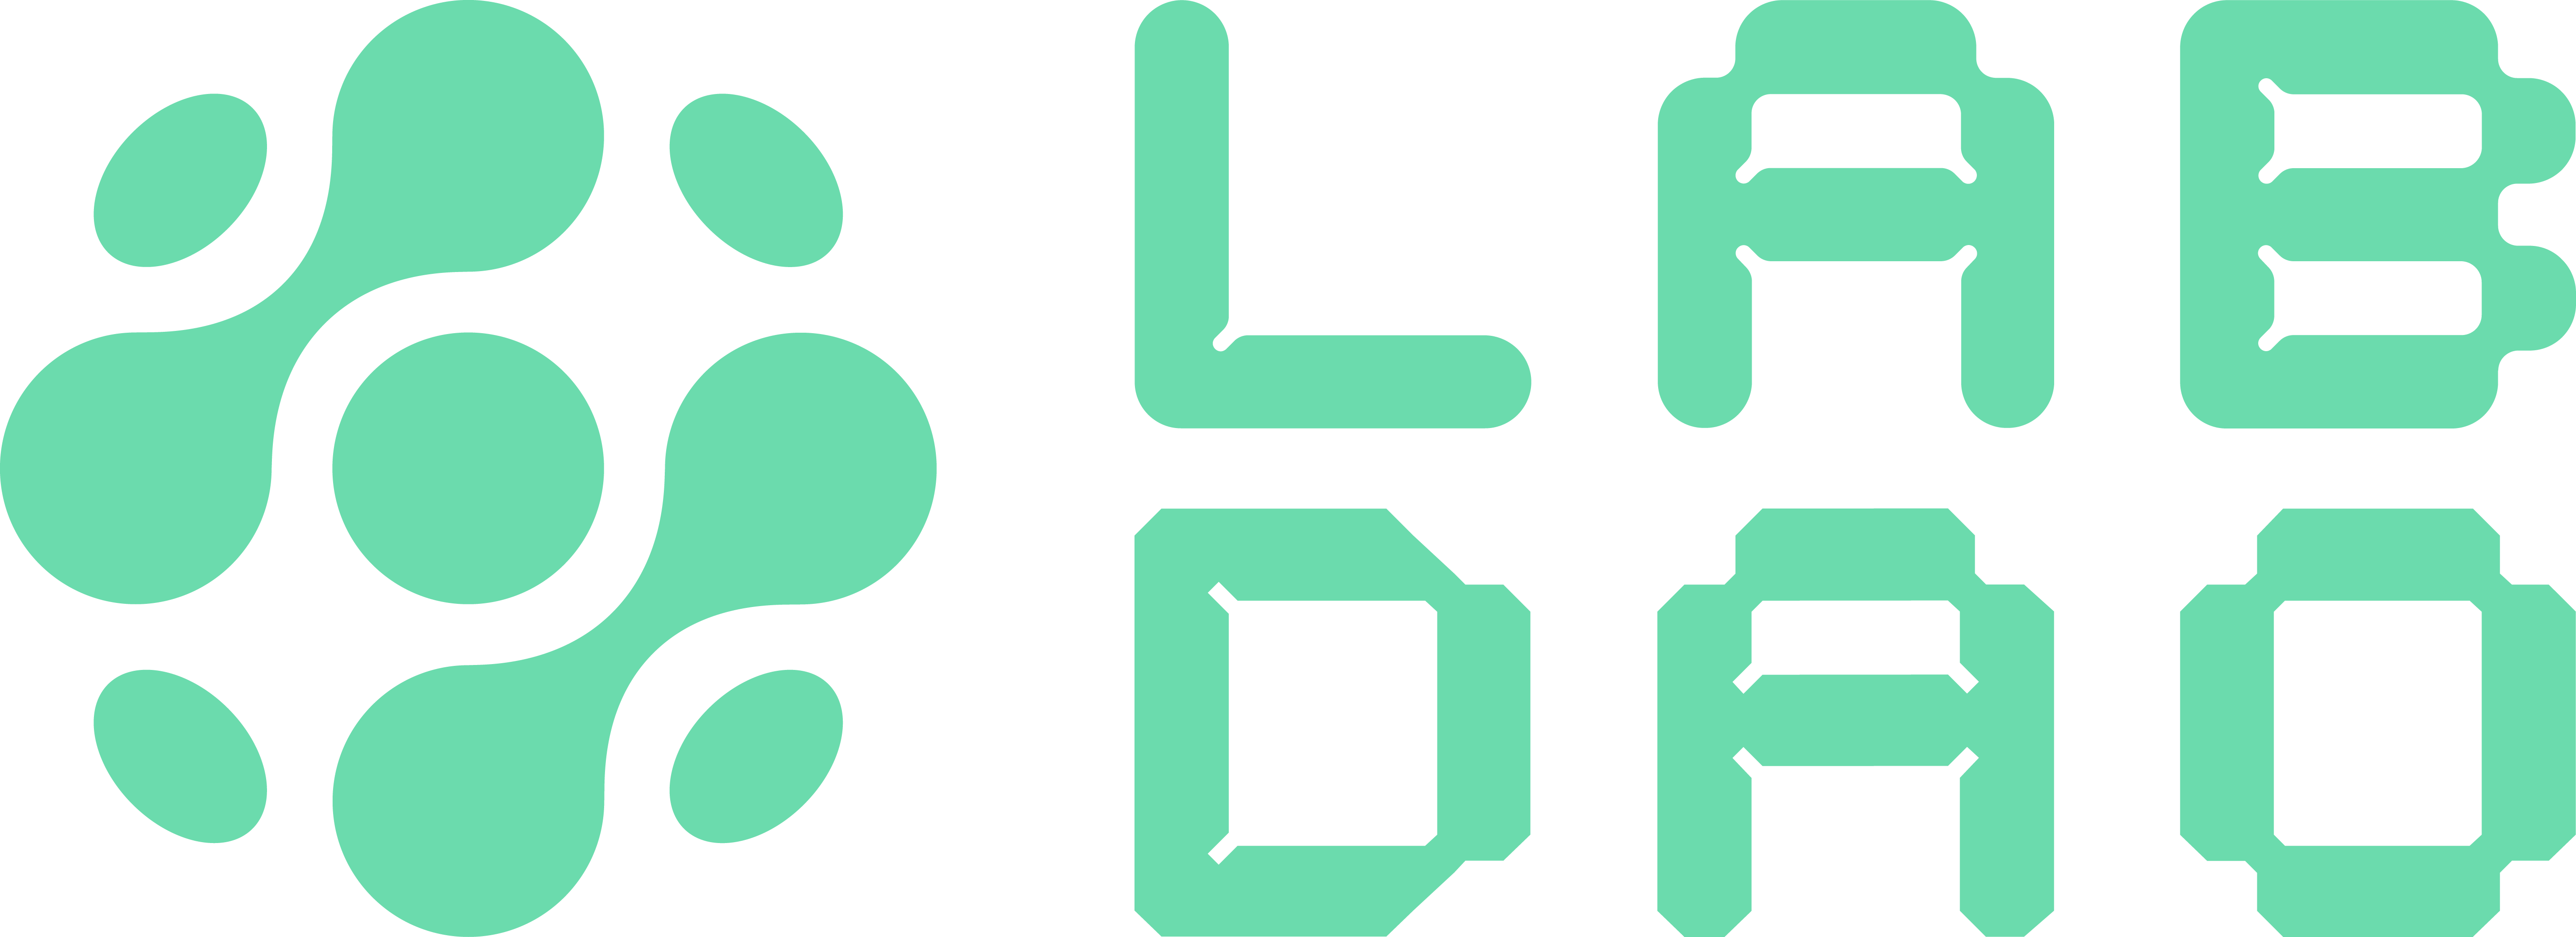 LabDAO_Logo_Teal.png